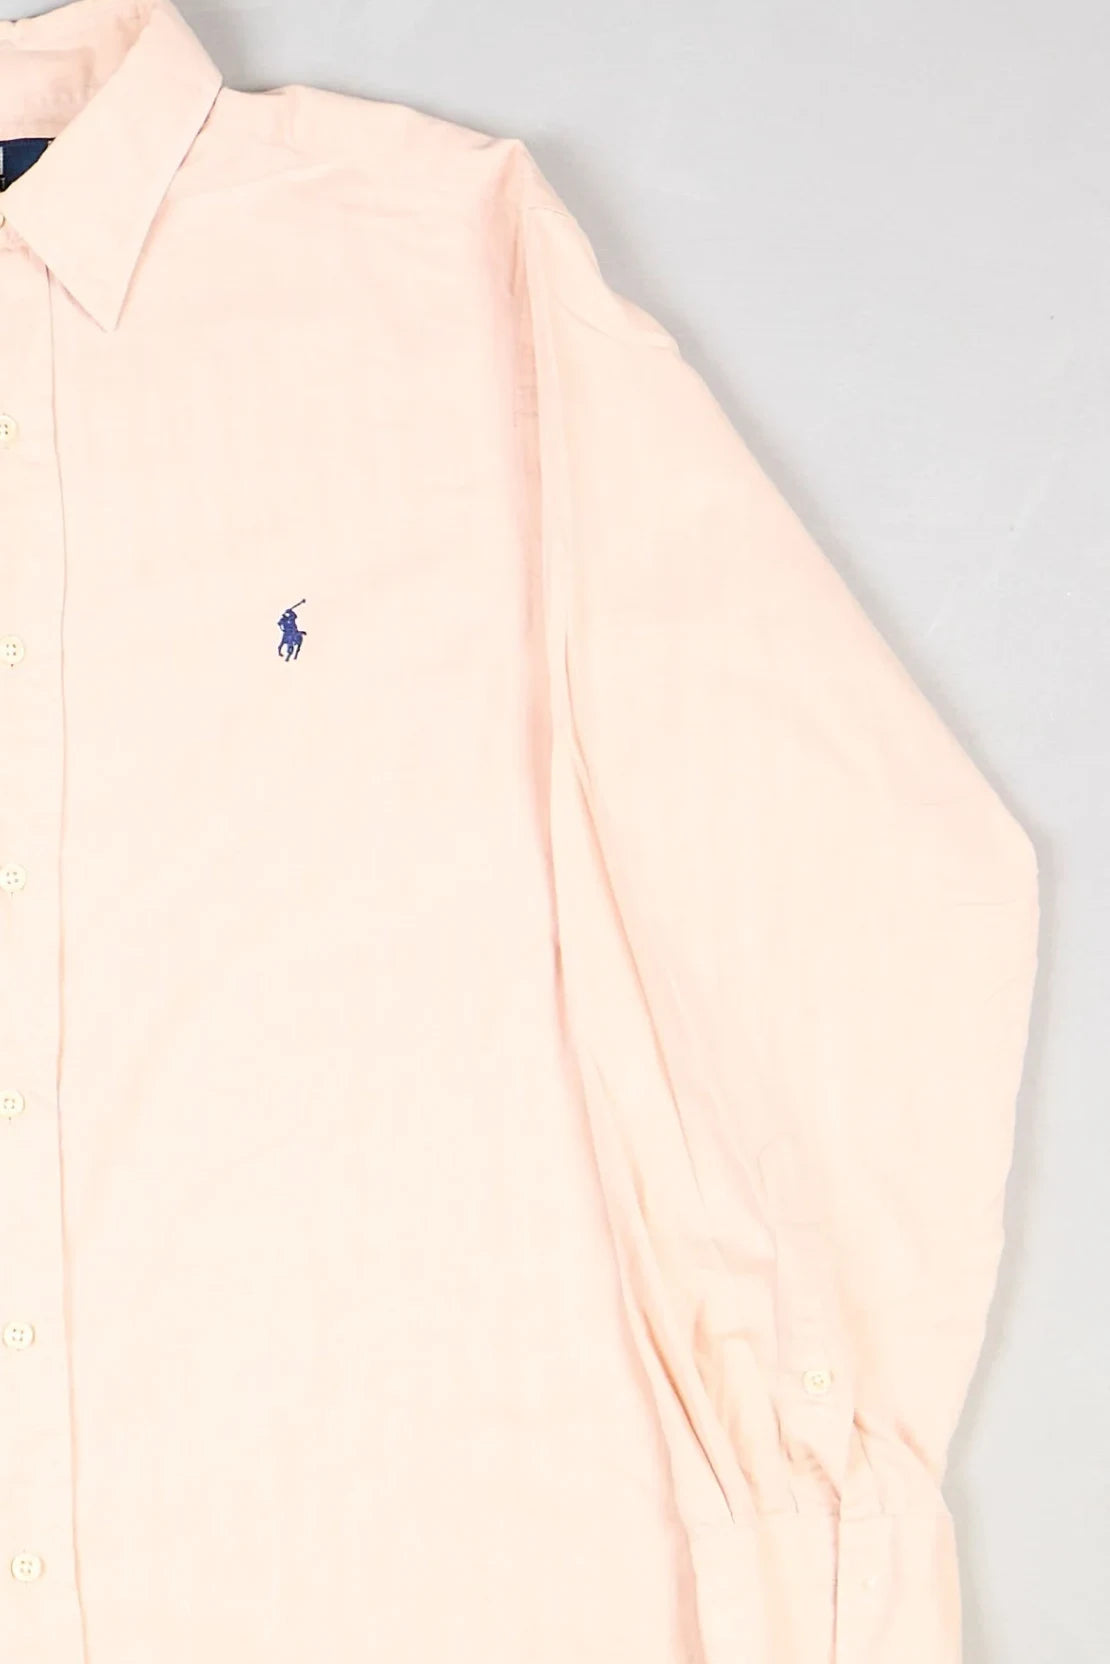 Ralph Lauren - Shirt (M) Right